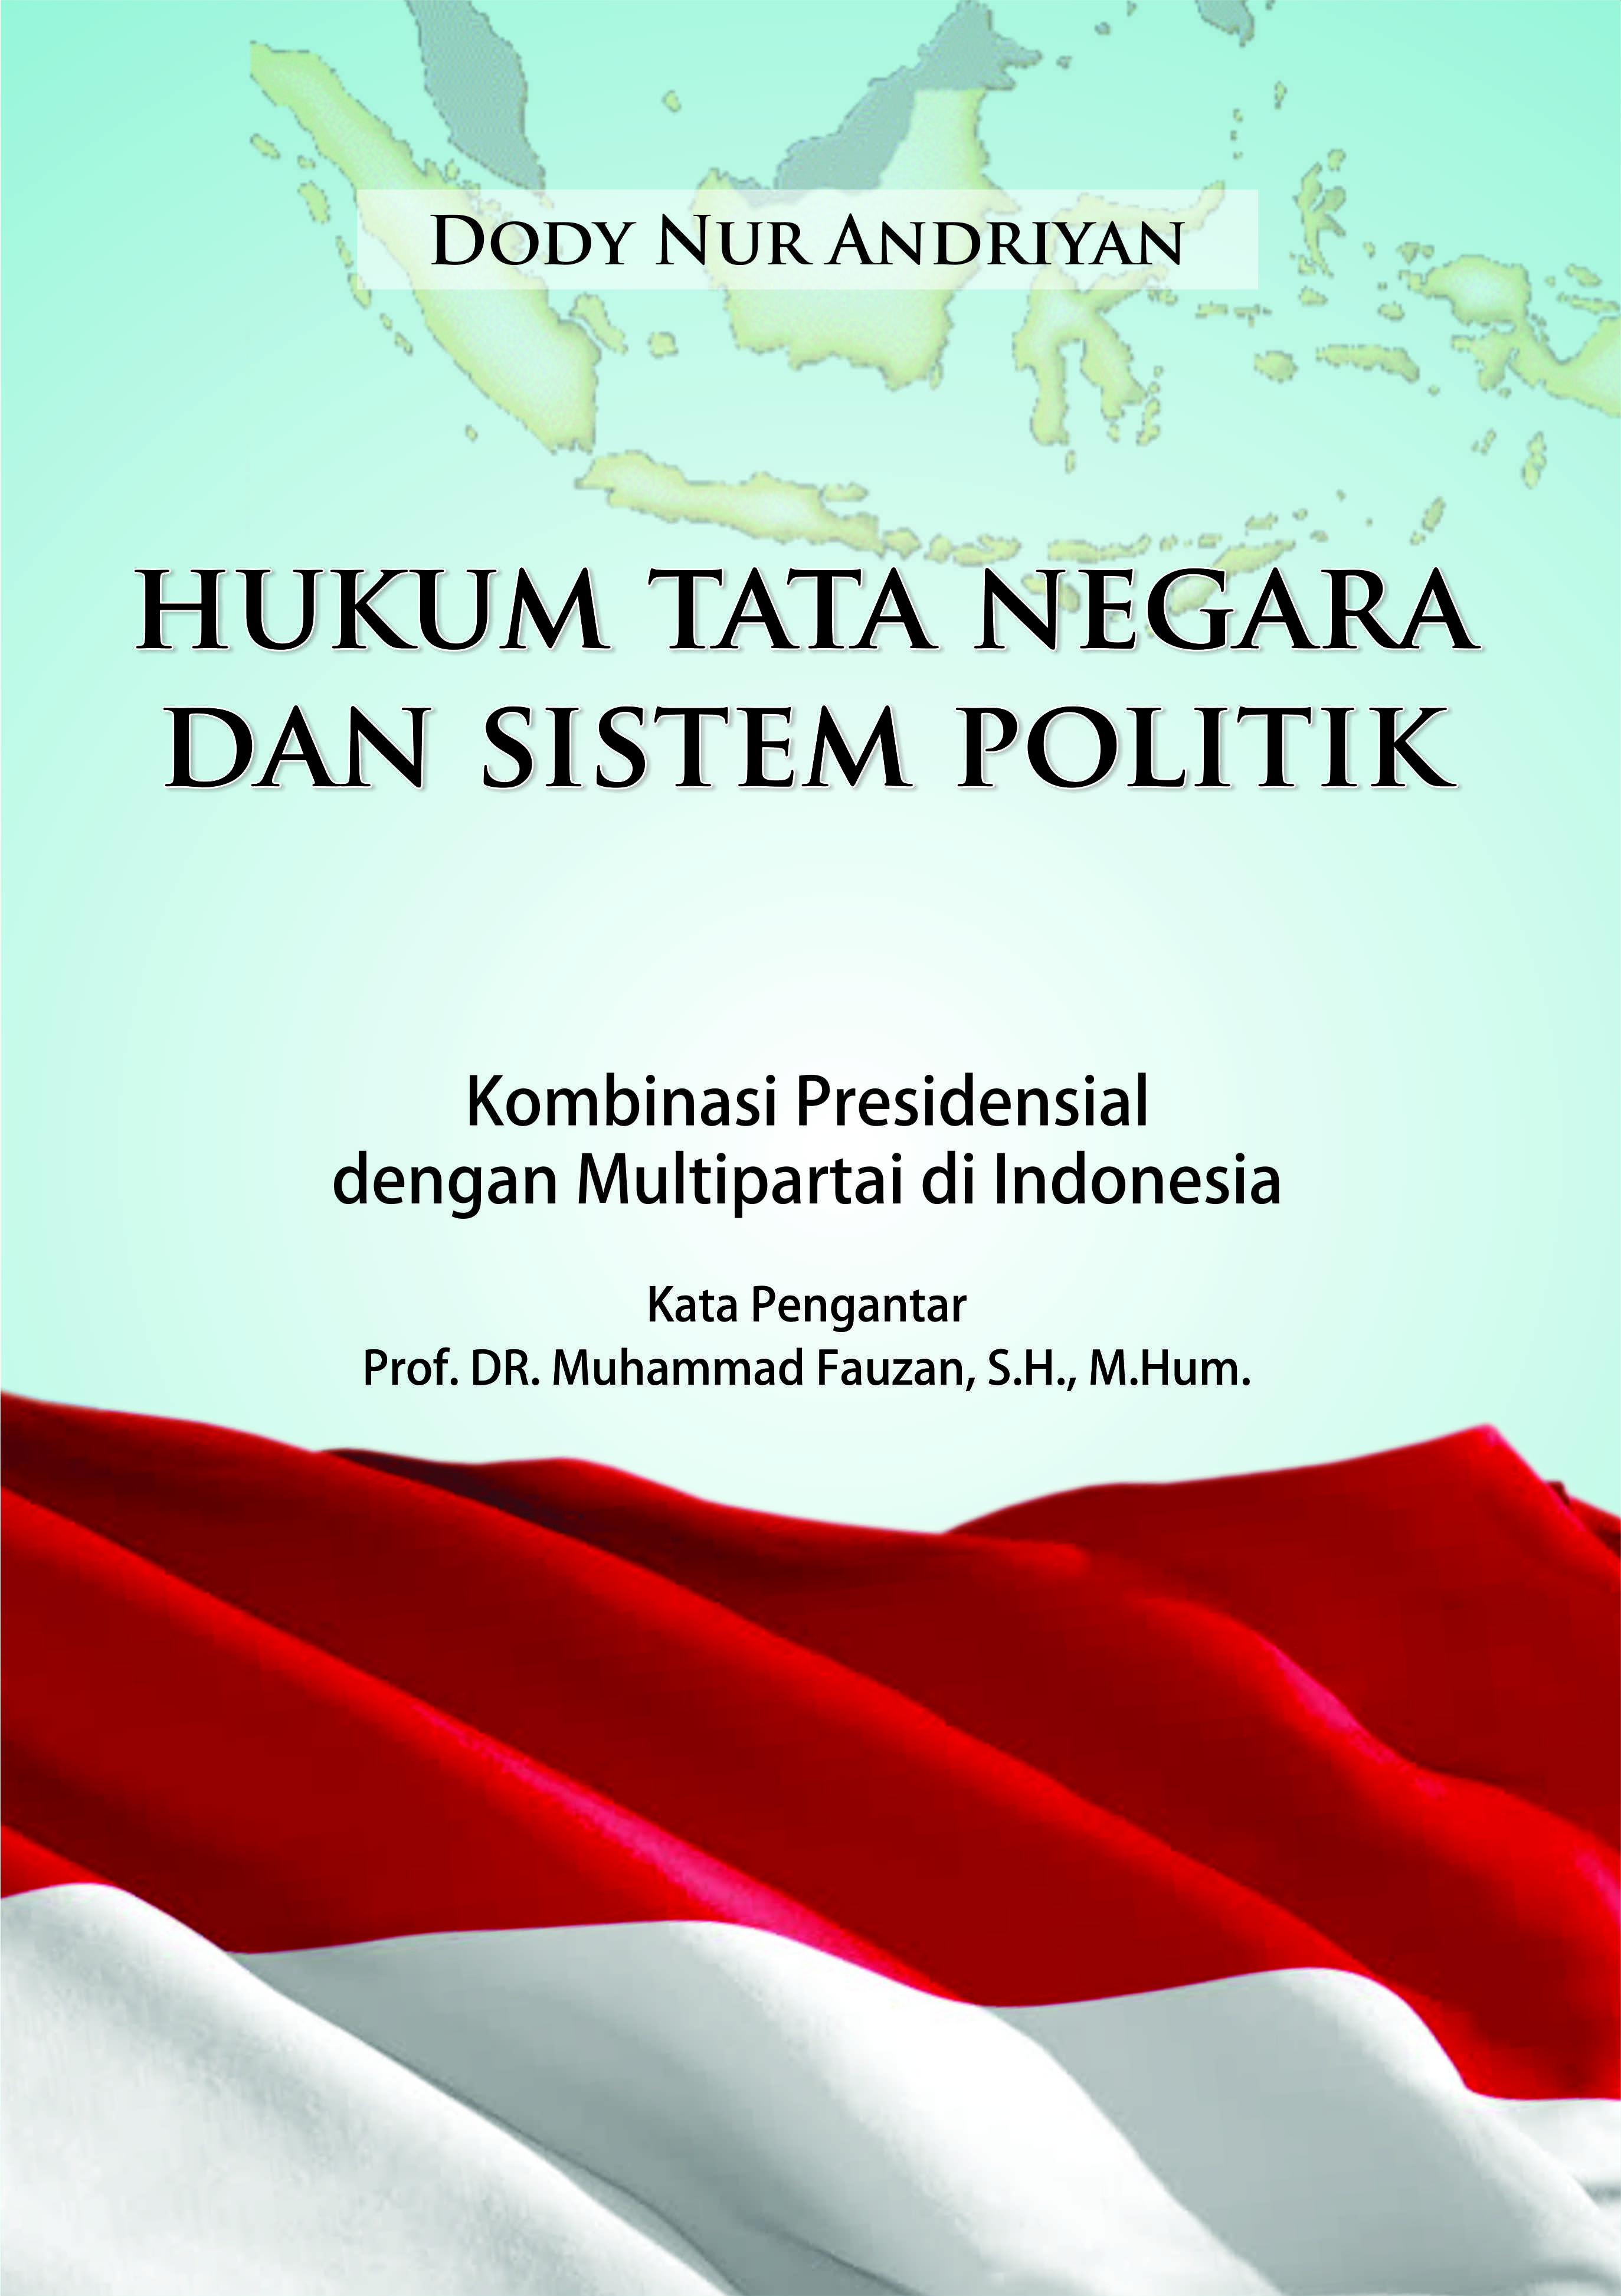 Hukum dan sistem politik